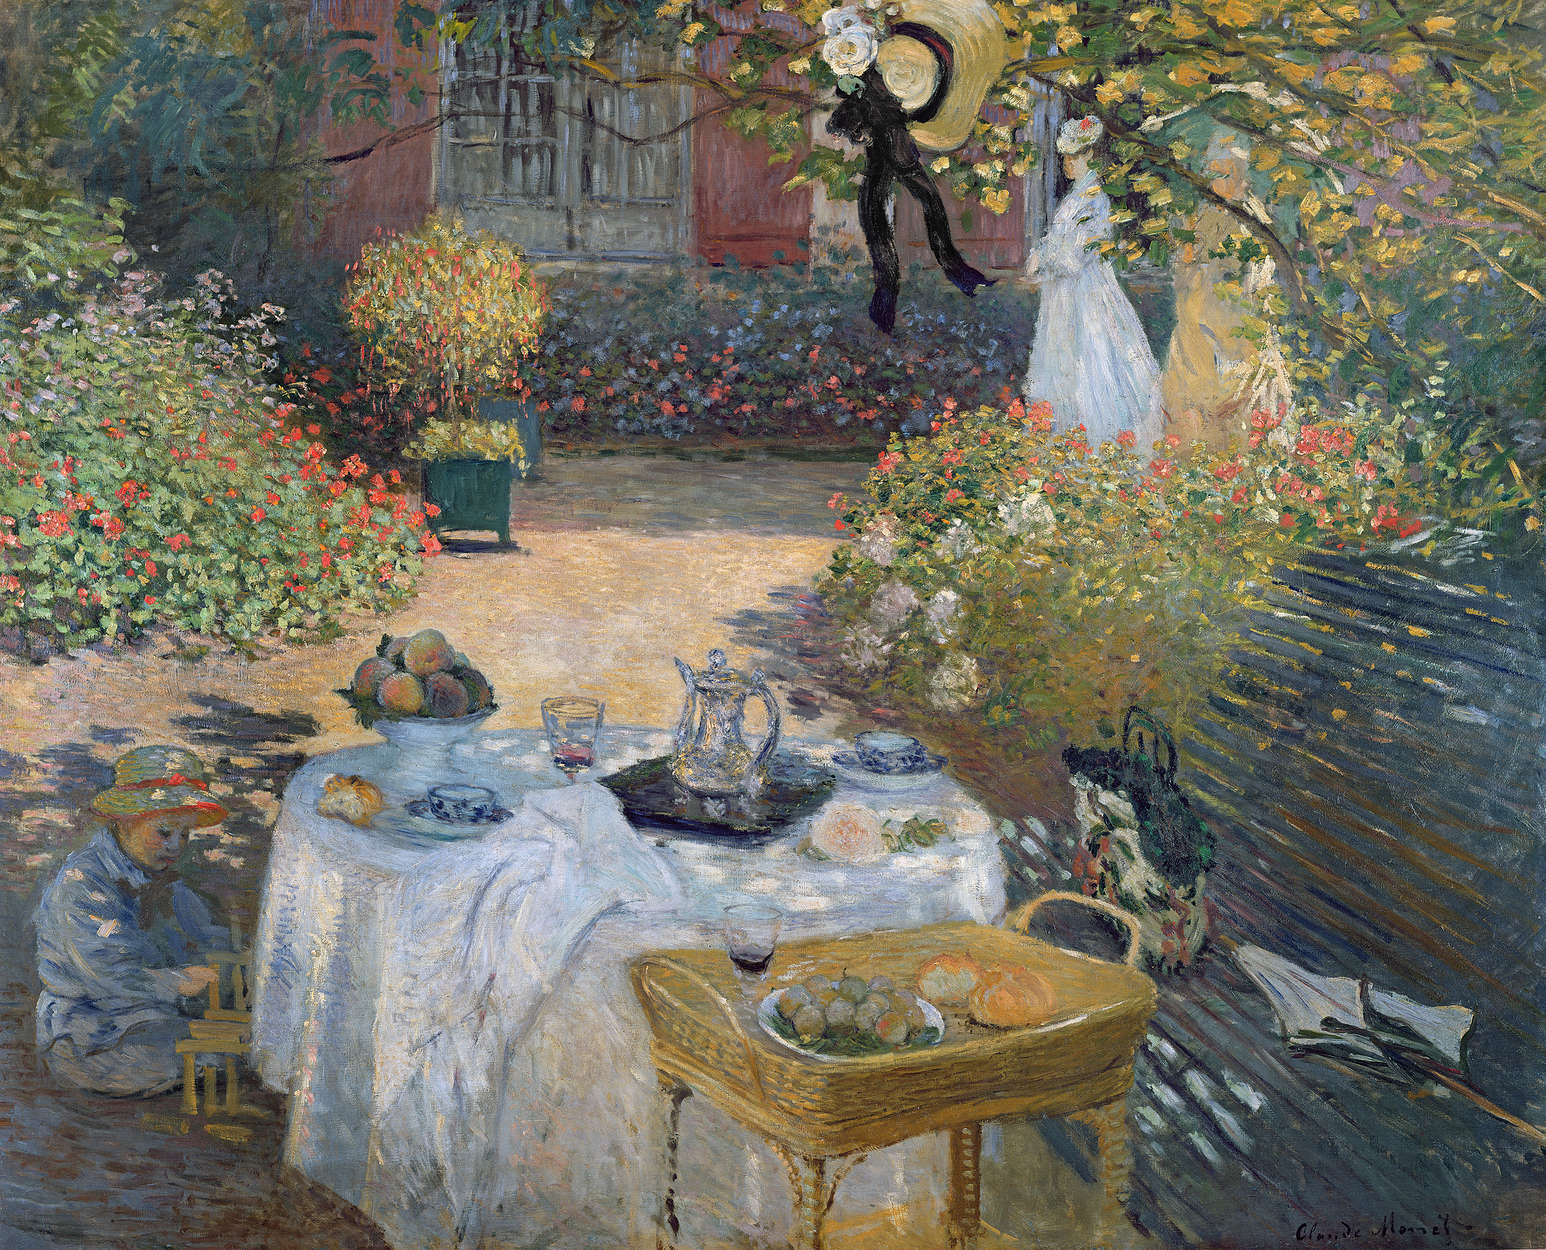             Muurschildering "Het middagmaal: de tuin van Monet in Argenteuil" van Claude Monet
        